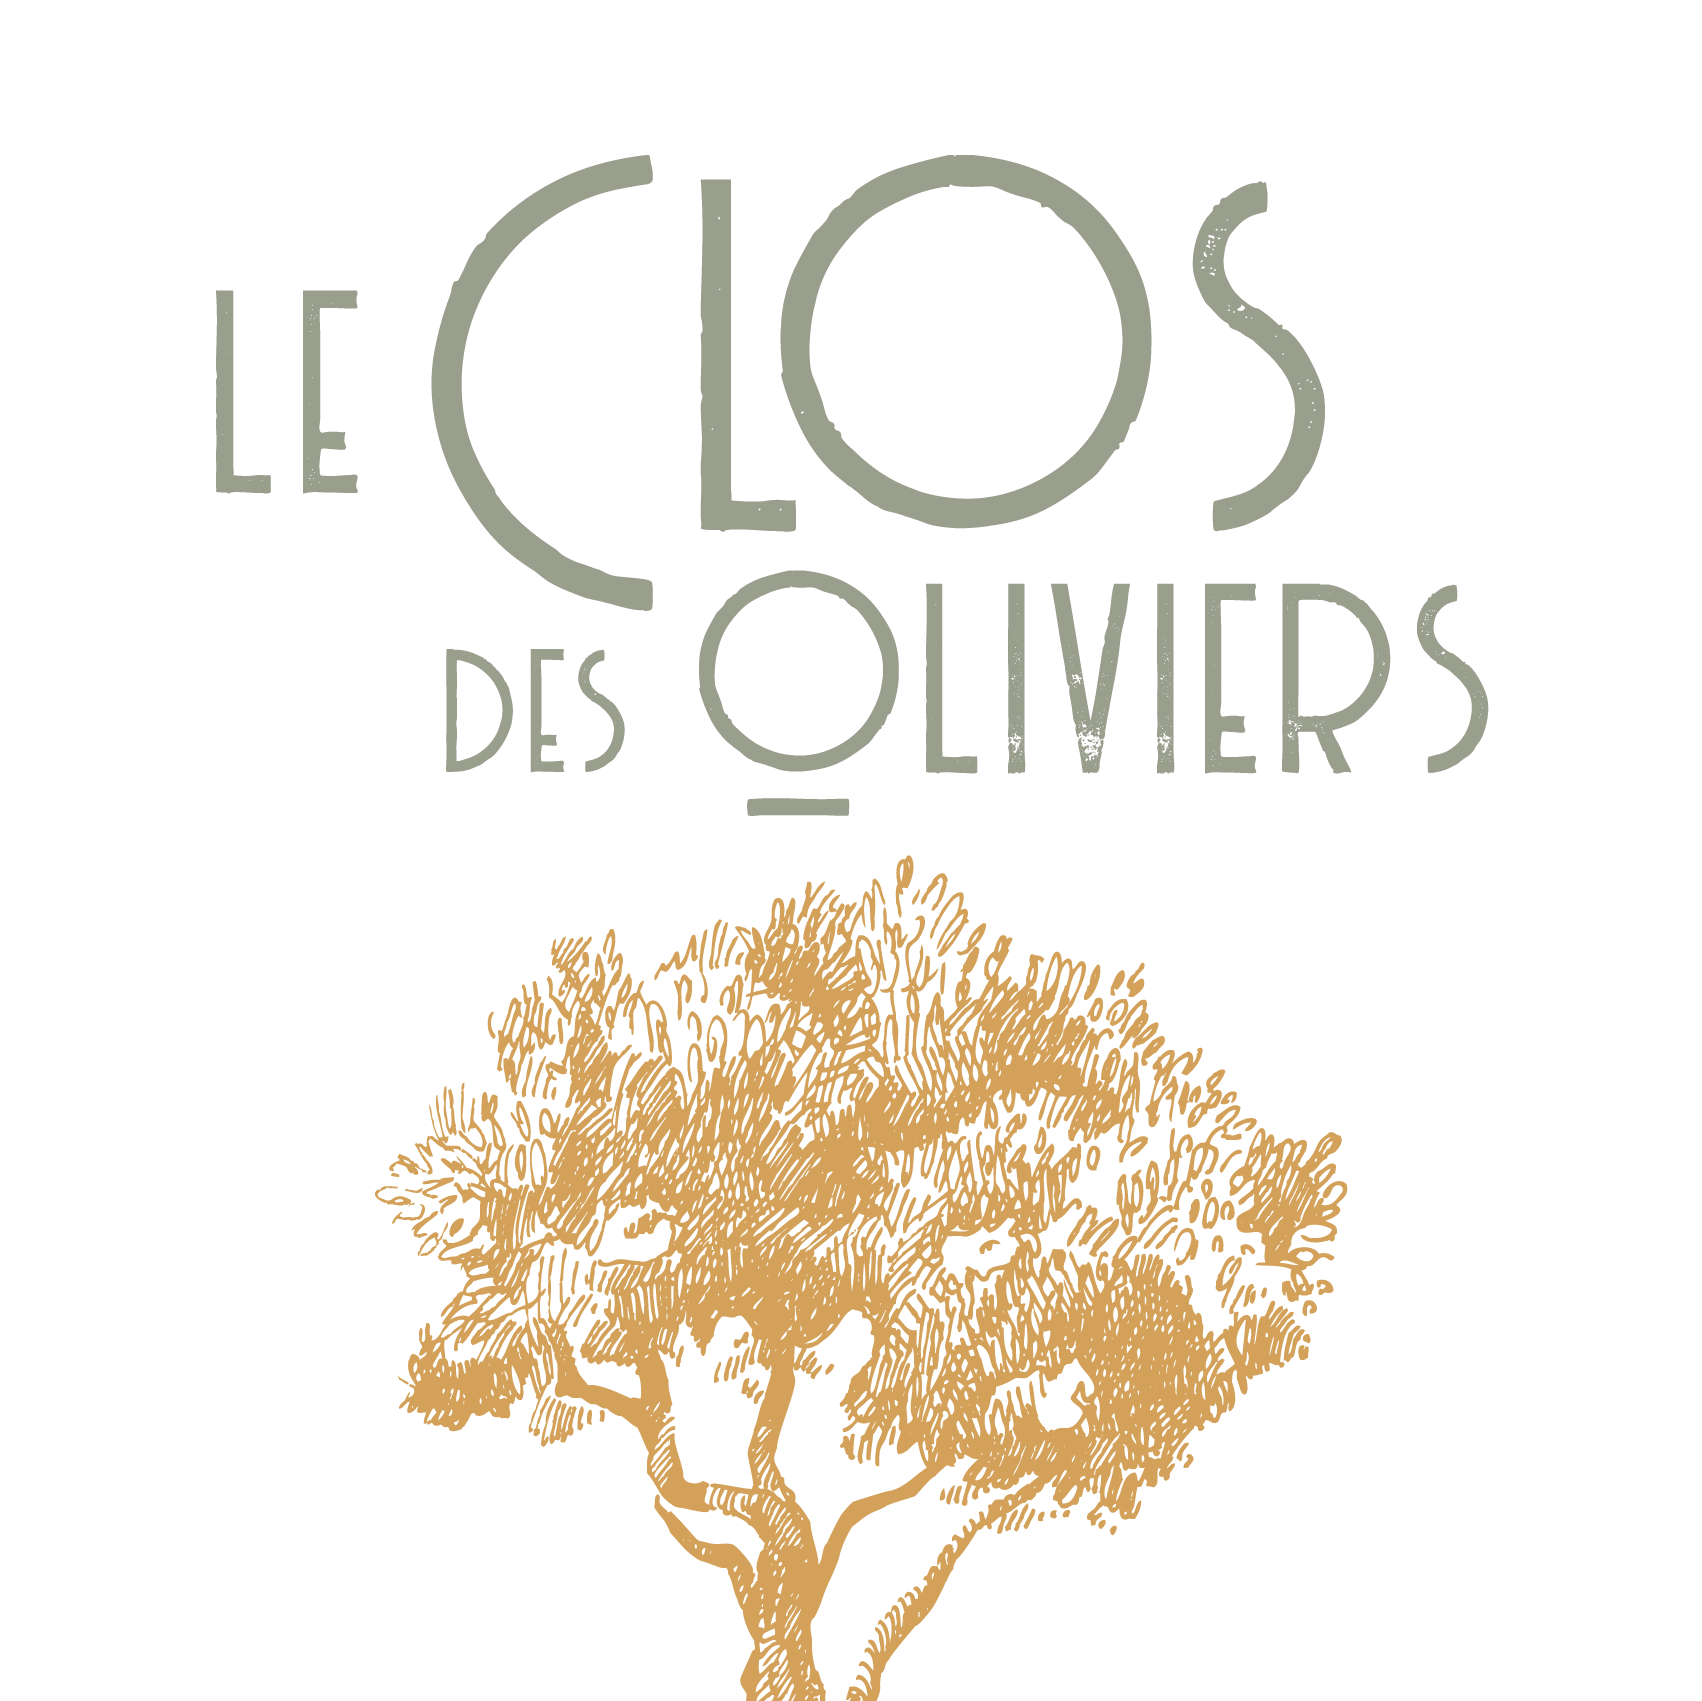 LE CLOS DES OLIVIERS